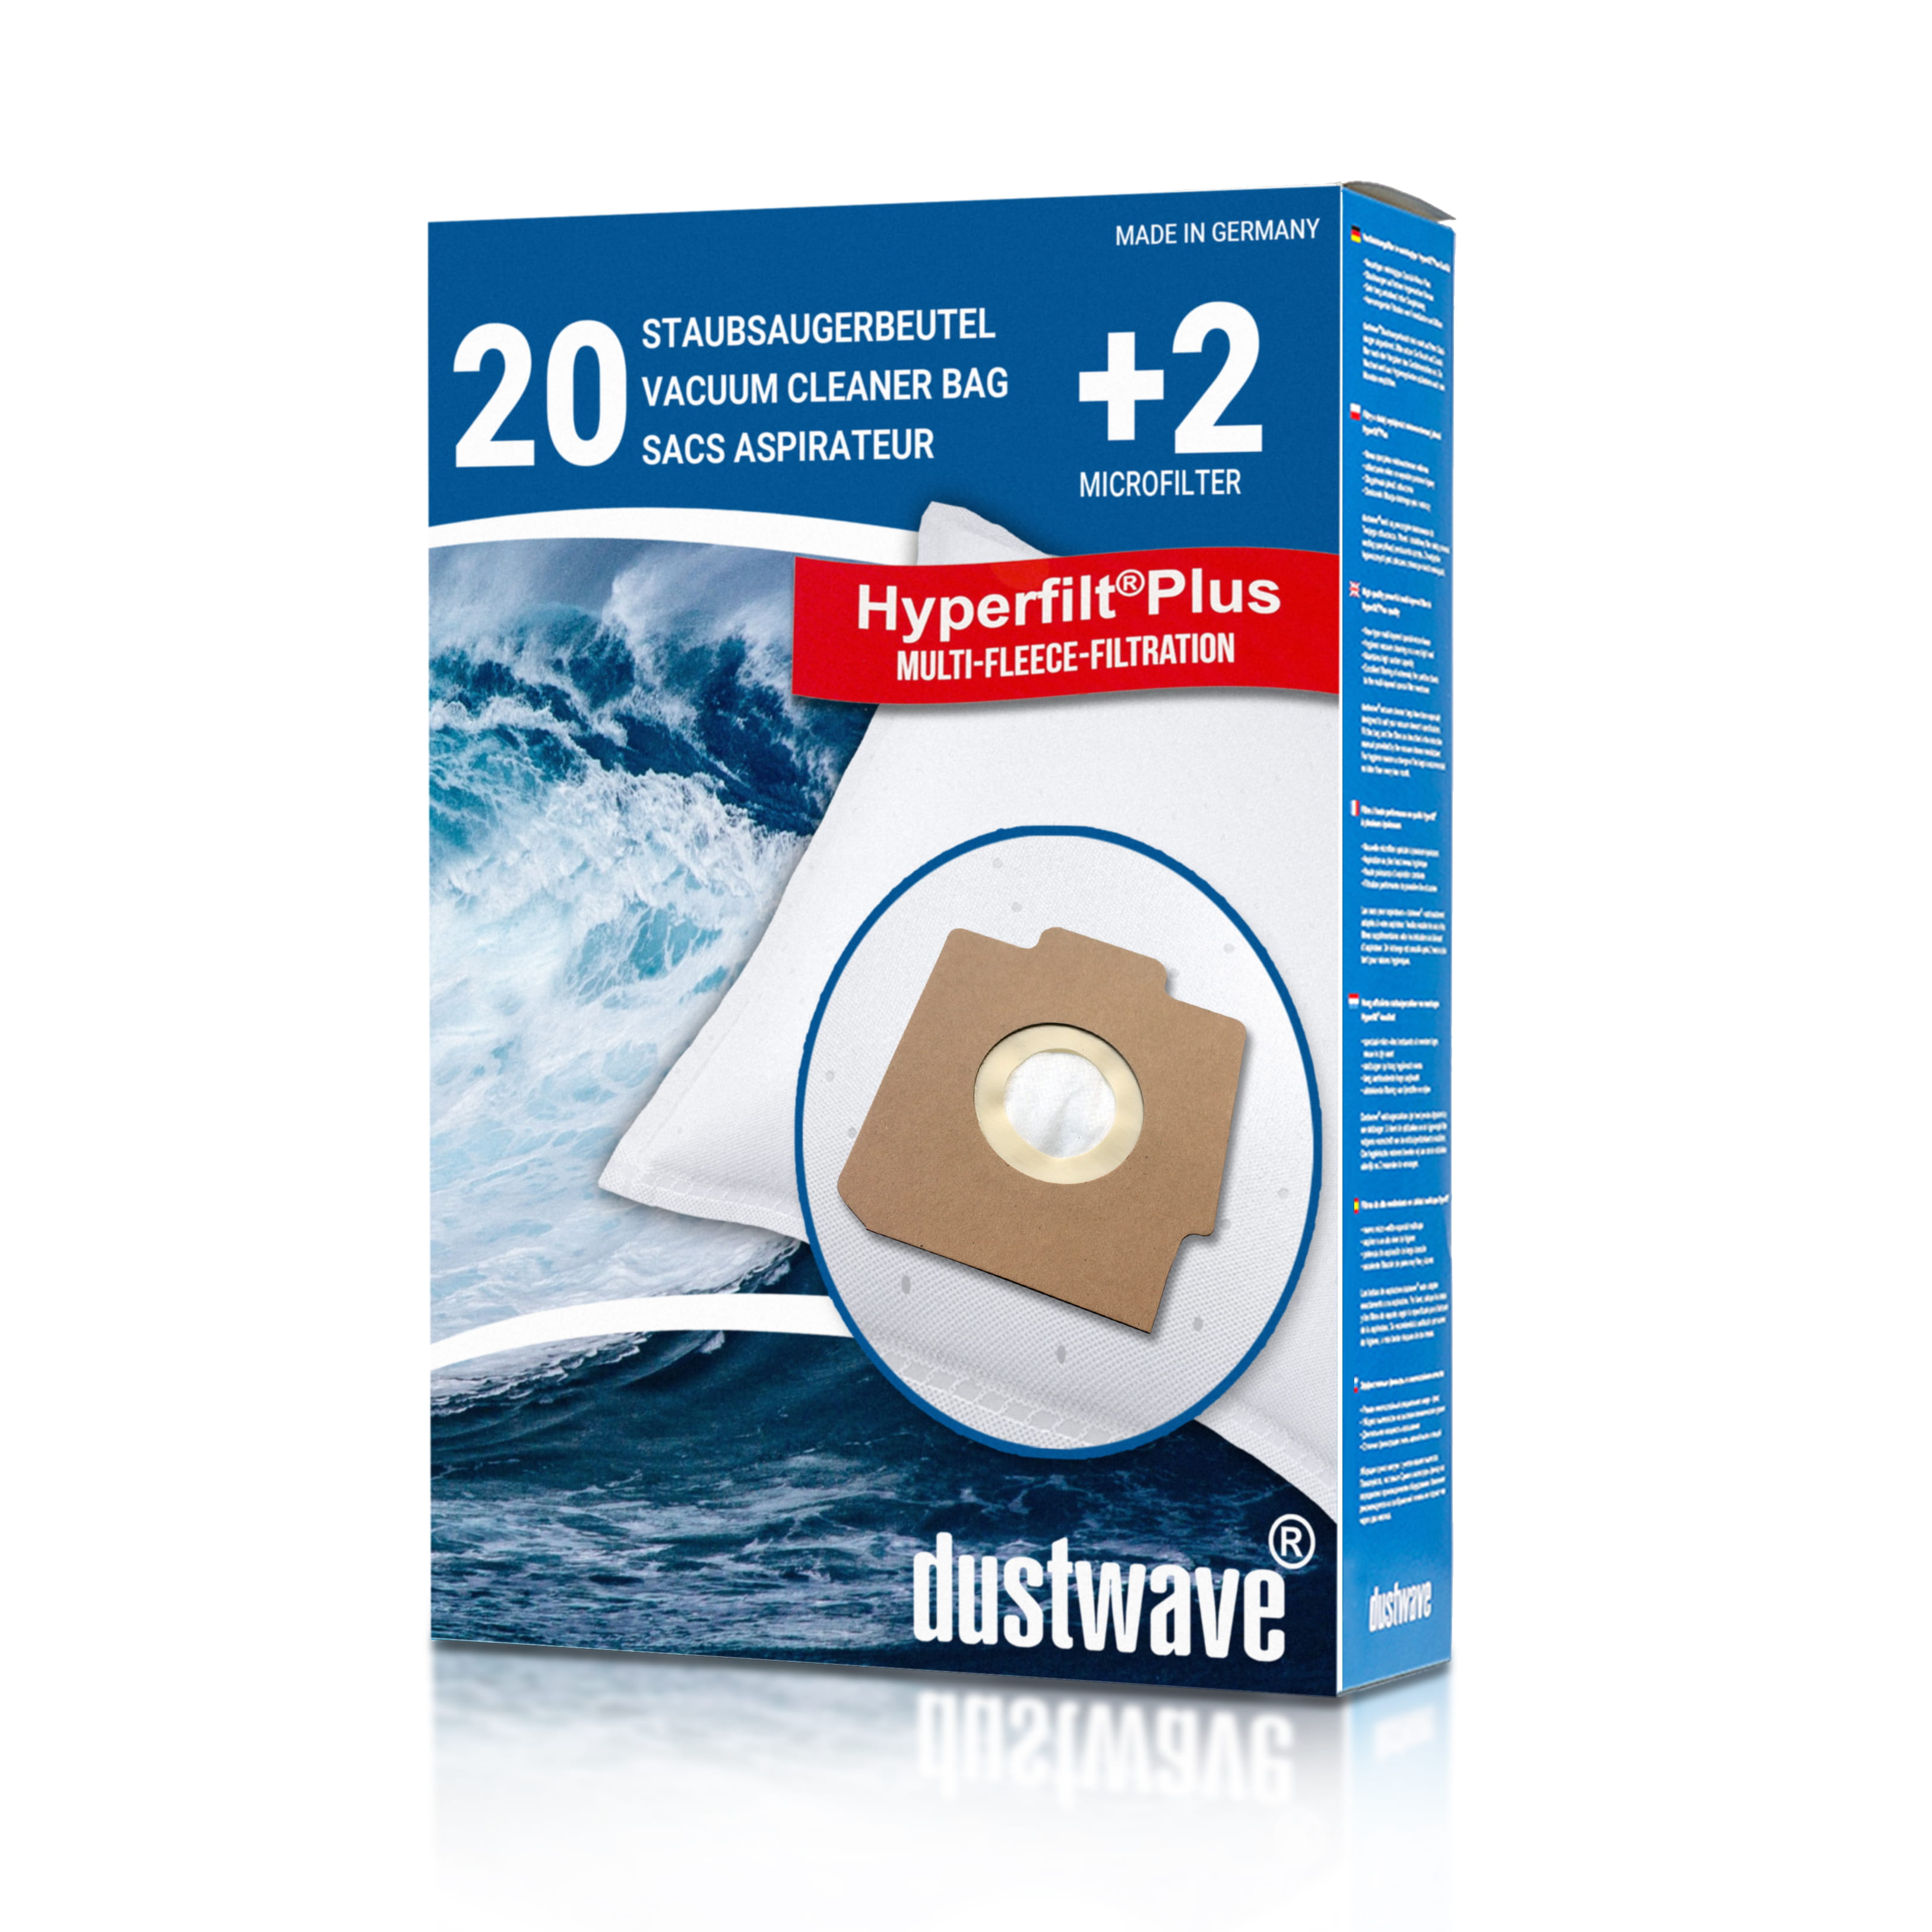 Dustwave® 20 Staubsaugerbeutel für Hoover S3730 / TRS3730 - hocheffizient, mehrlagiges Mikrovlies mit Hygieneverschluss - Made in Germany